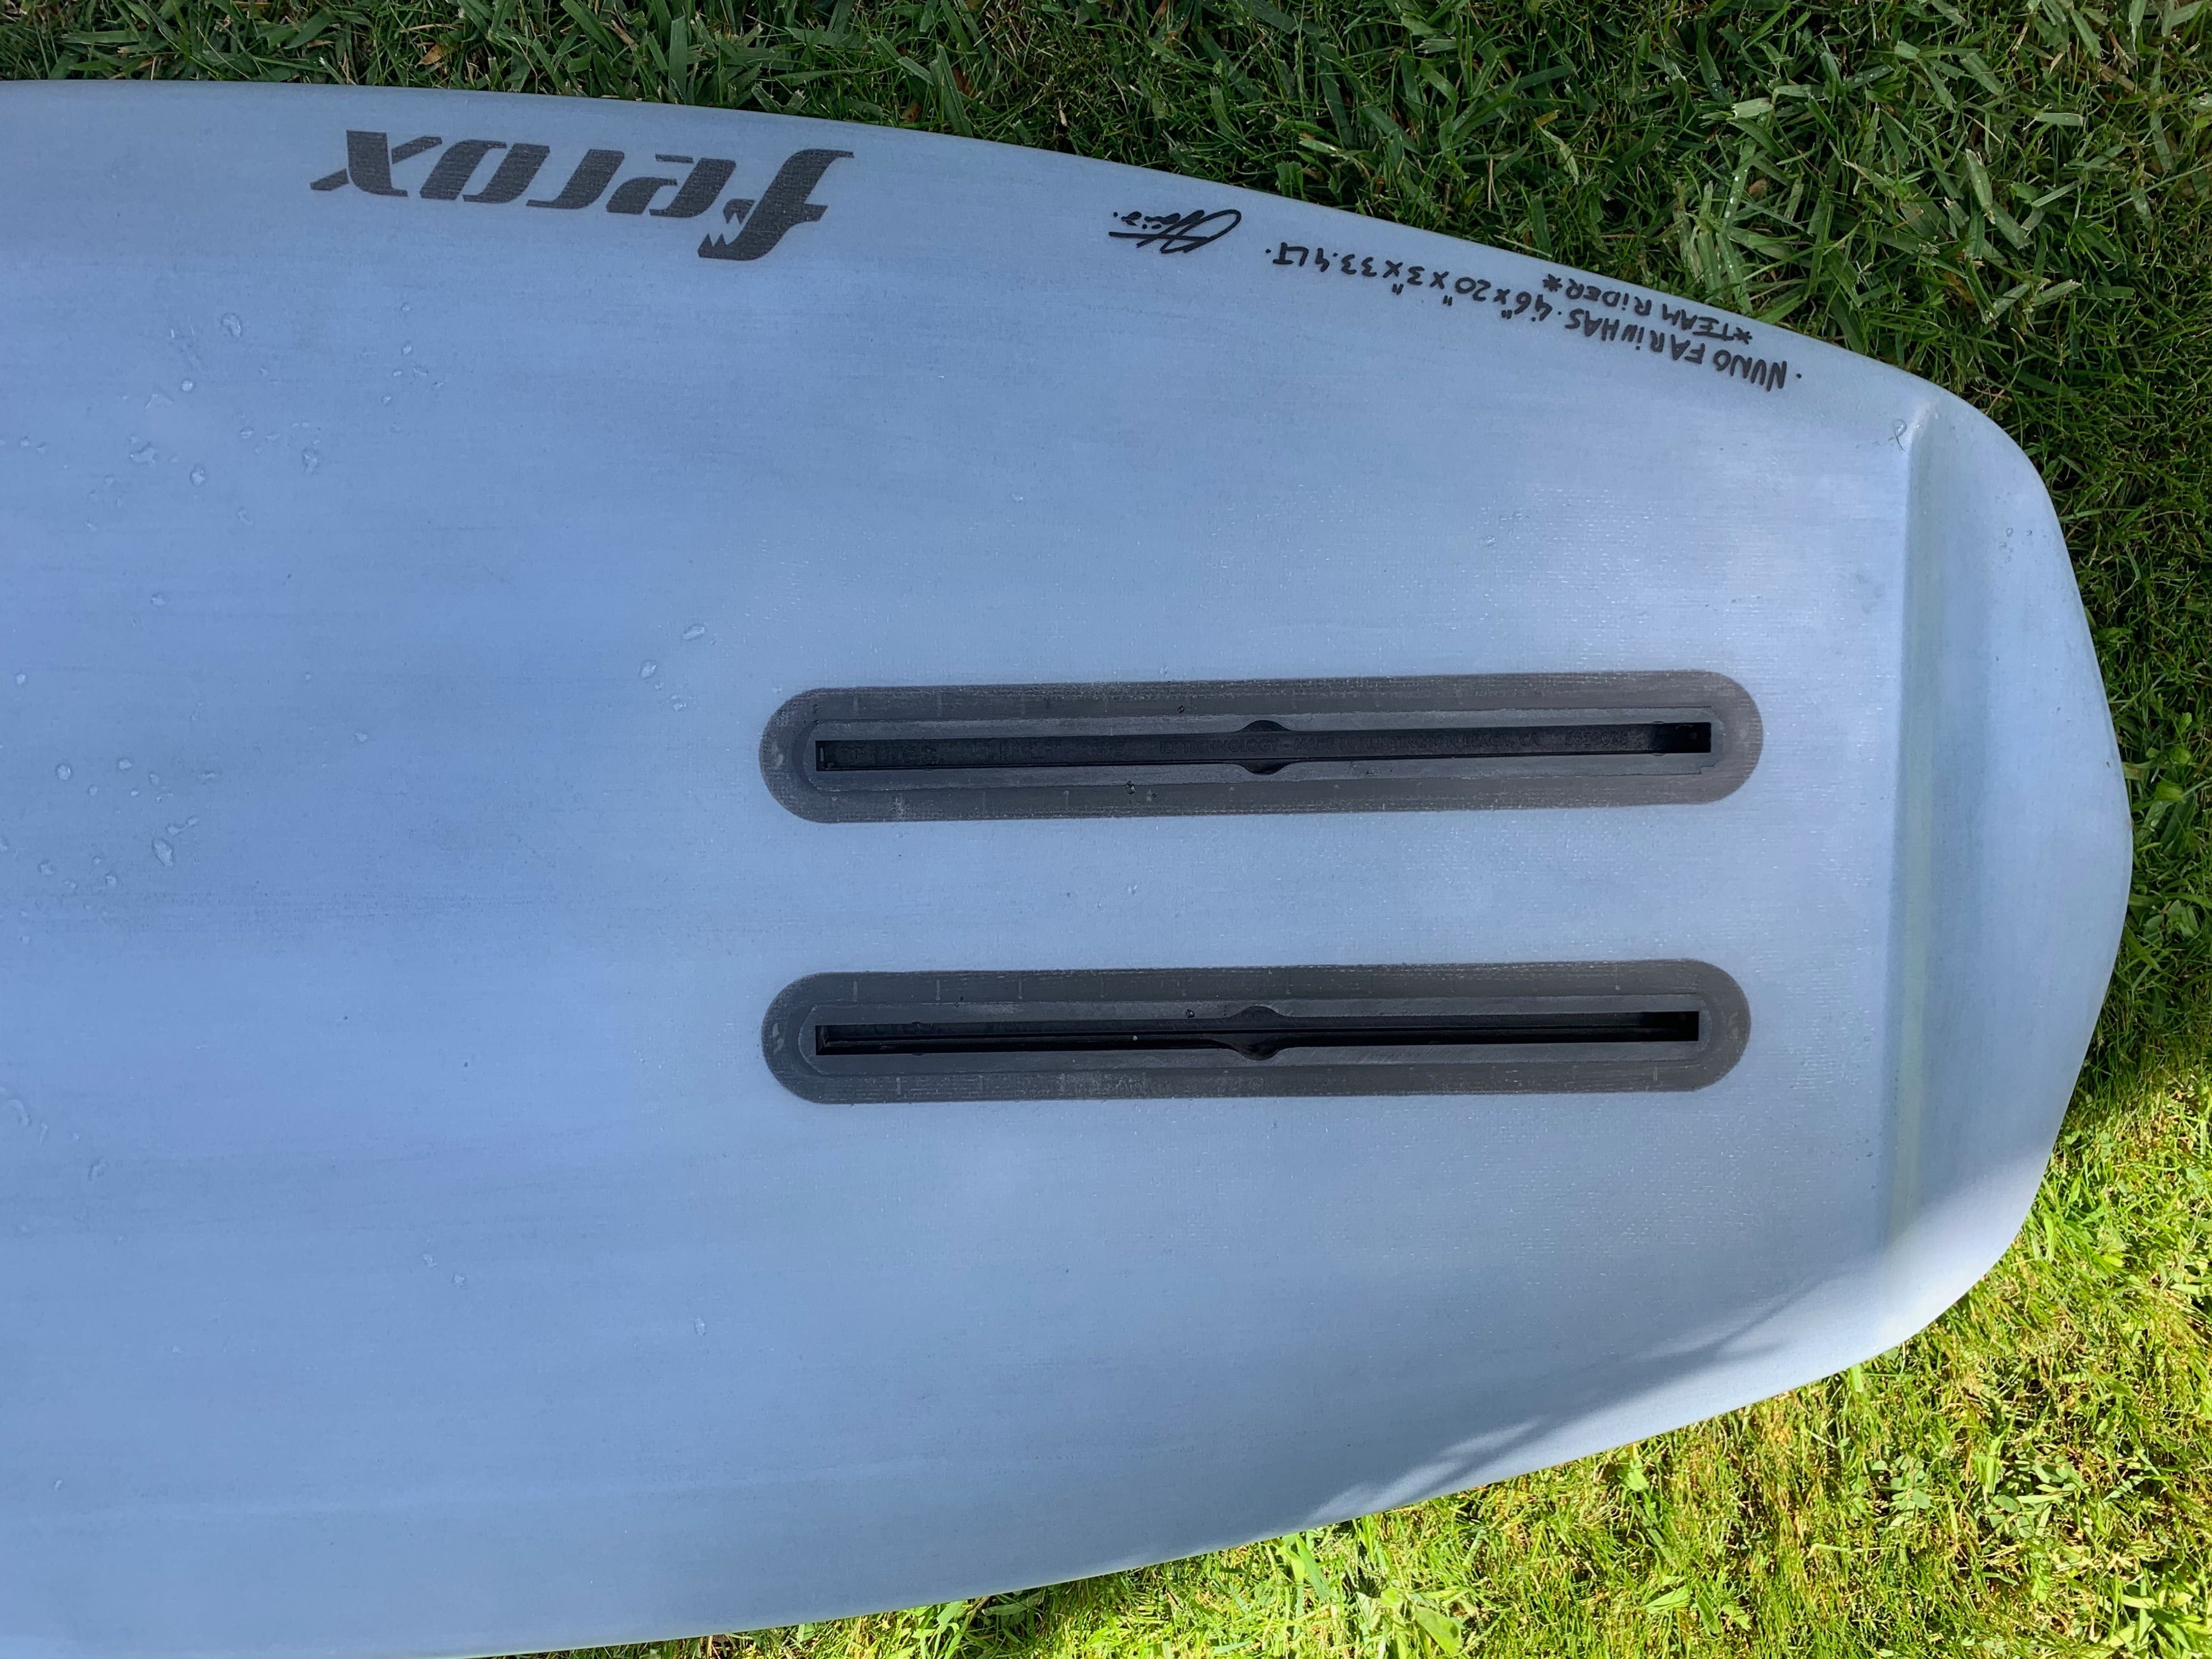 Prancha Surf Foil Ferox Surfboards / Wing Foil - 4´6 / 33 Litros